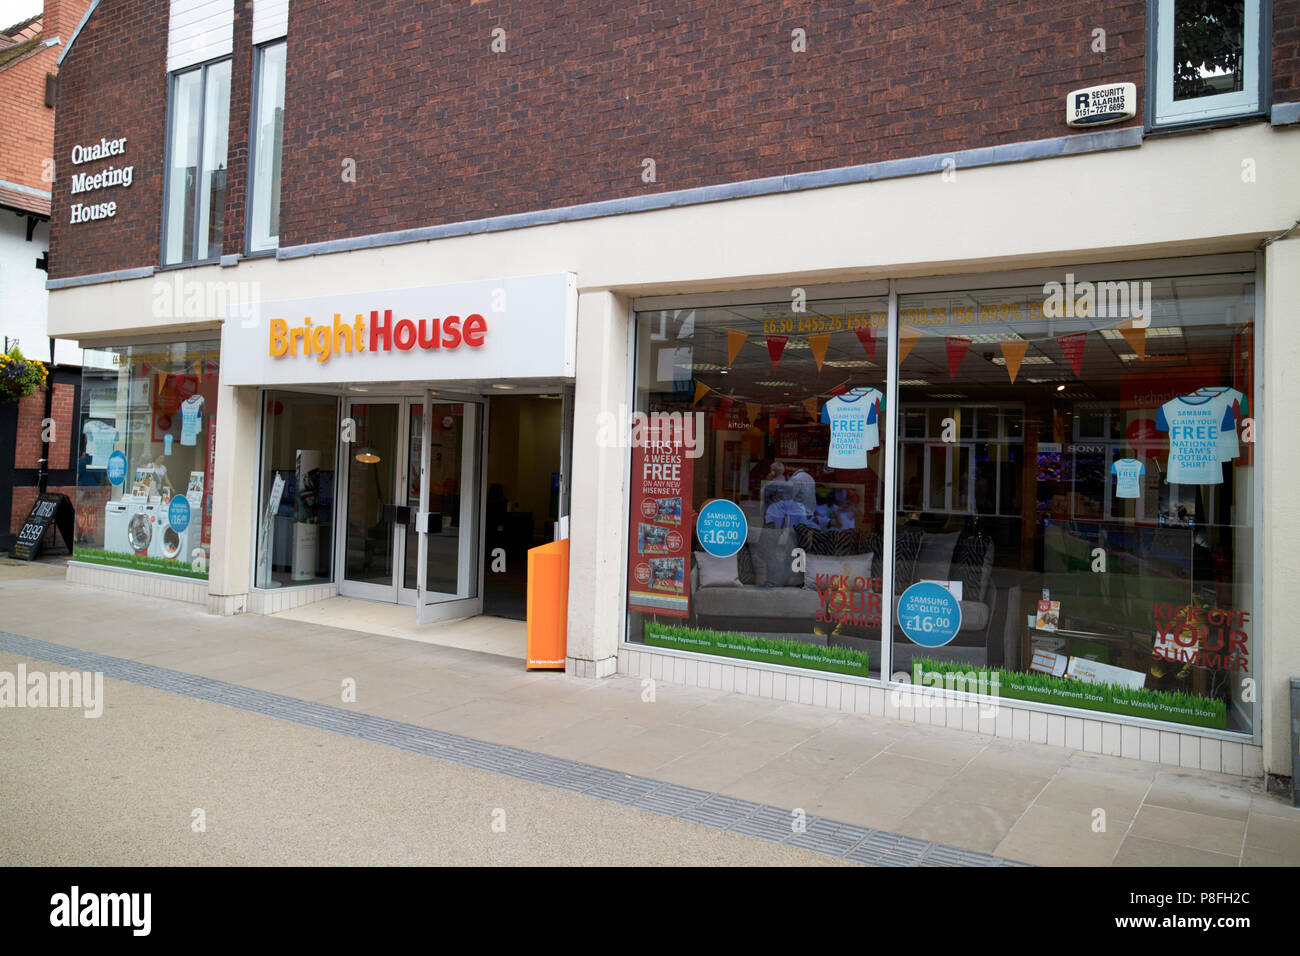 Brighthouse negozio nel centro della città di Chester cheshire england regno unito Foto Stock